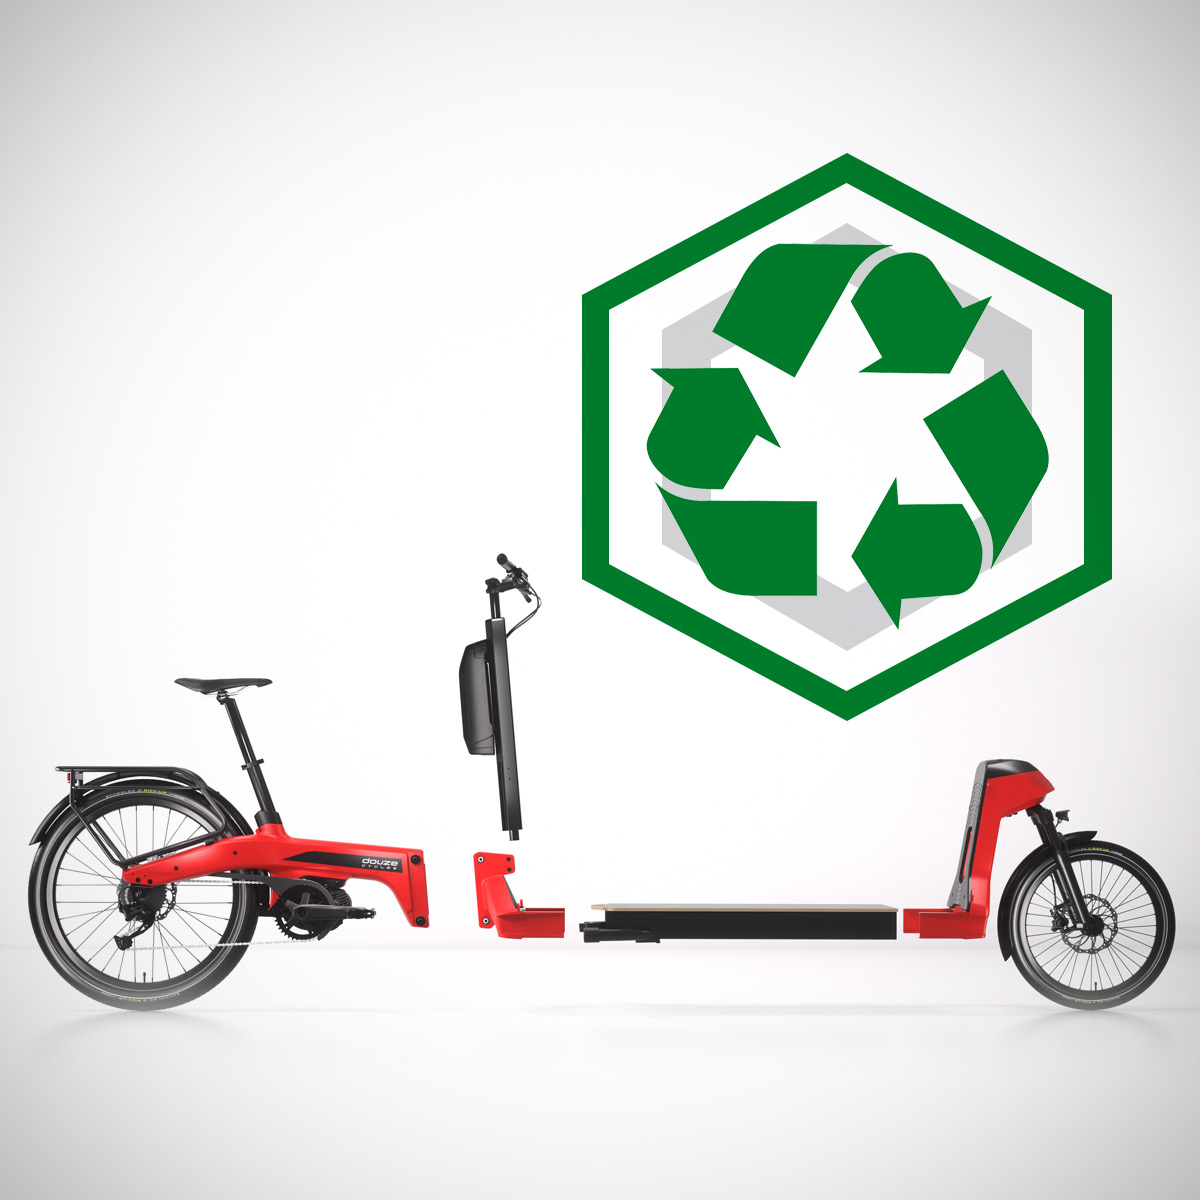 丰田推出首款电助力载货自行车 仅在法国销售